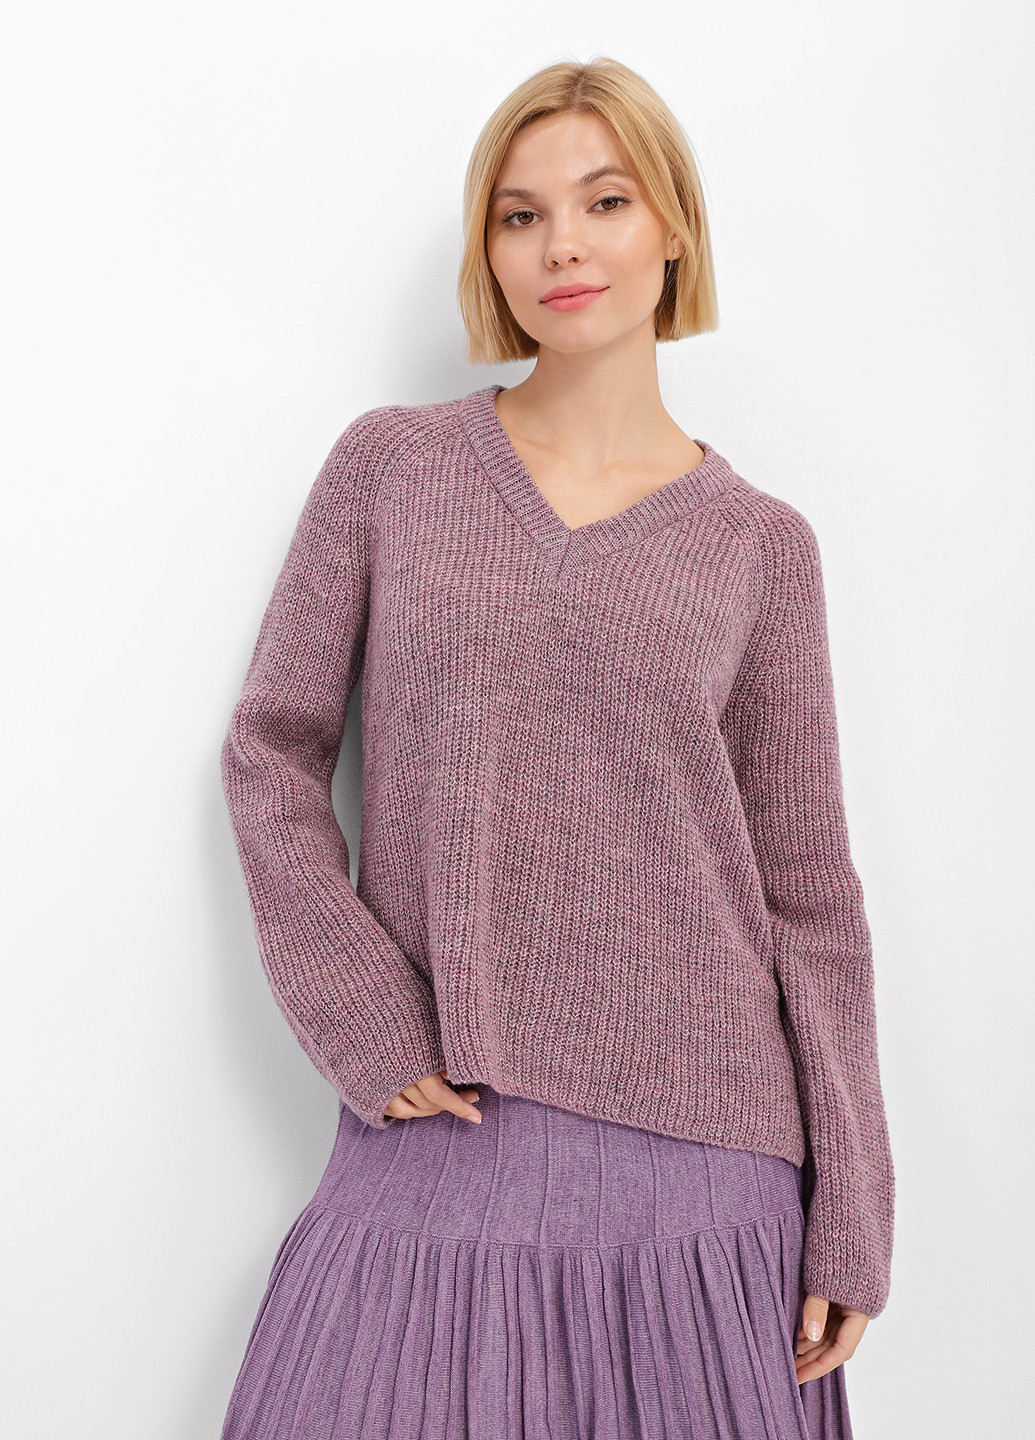 Сиреневый демисезонный пуловер пуловер Sewel